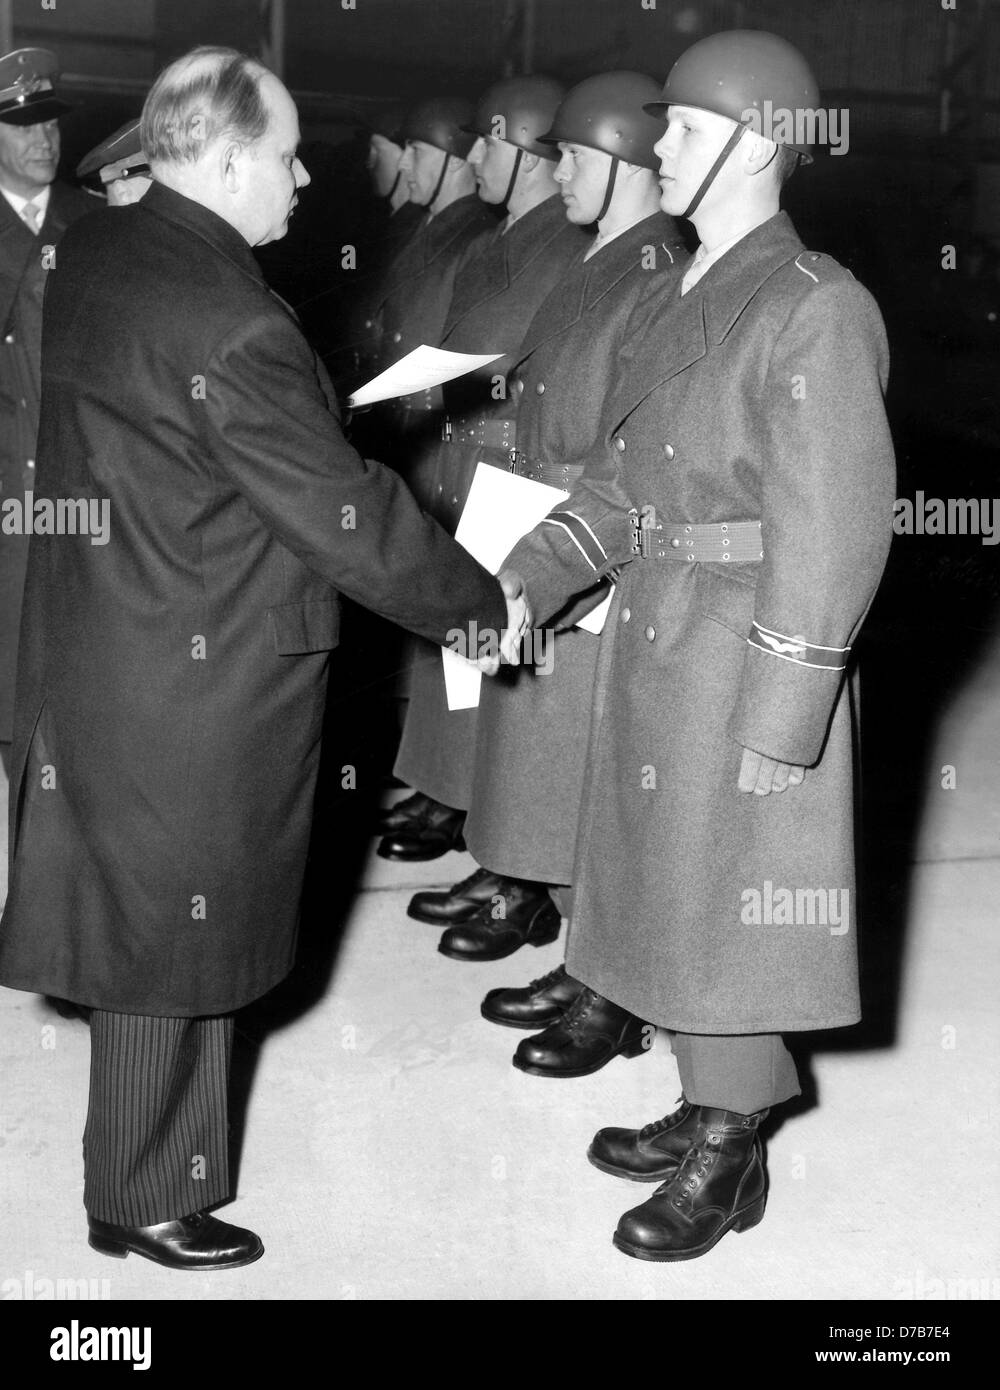 Le ministre allemand de la défense, Theodor Blank (l) les mains sur les lettres de nomination le 9 janvier en 1956 pour les premiers soldats de la foce de l'air, qui va commencer un cours de formation de douze semaines dans la première caserne de la nouvelle force aérienne de l'Allemagne à Nörvenich. Banque D'Images